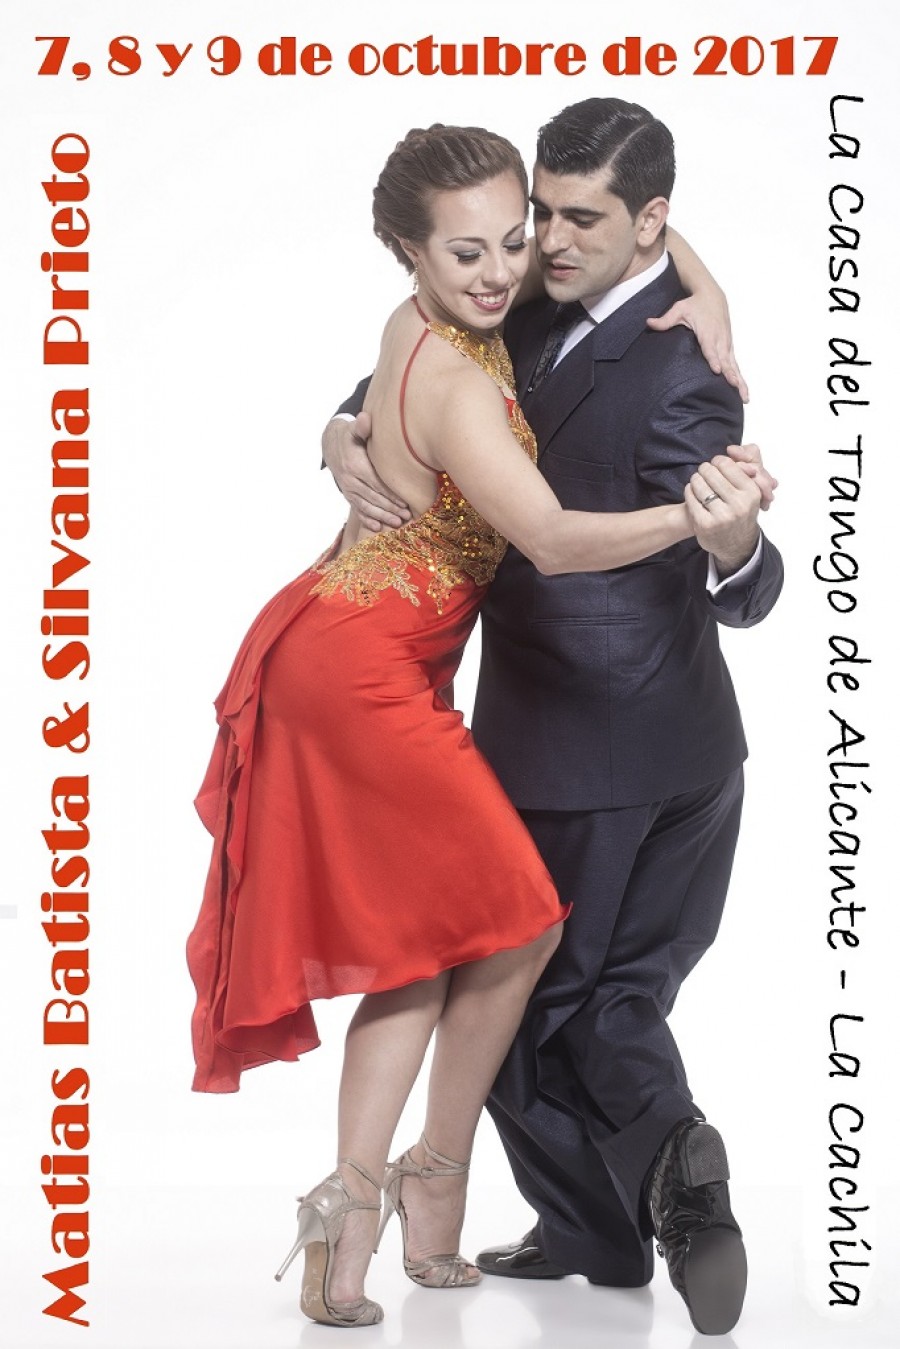 Matias Batista y Silvana Prieto en Casa del Tango Alicante